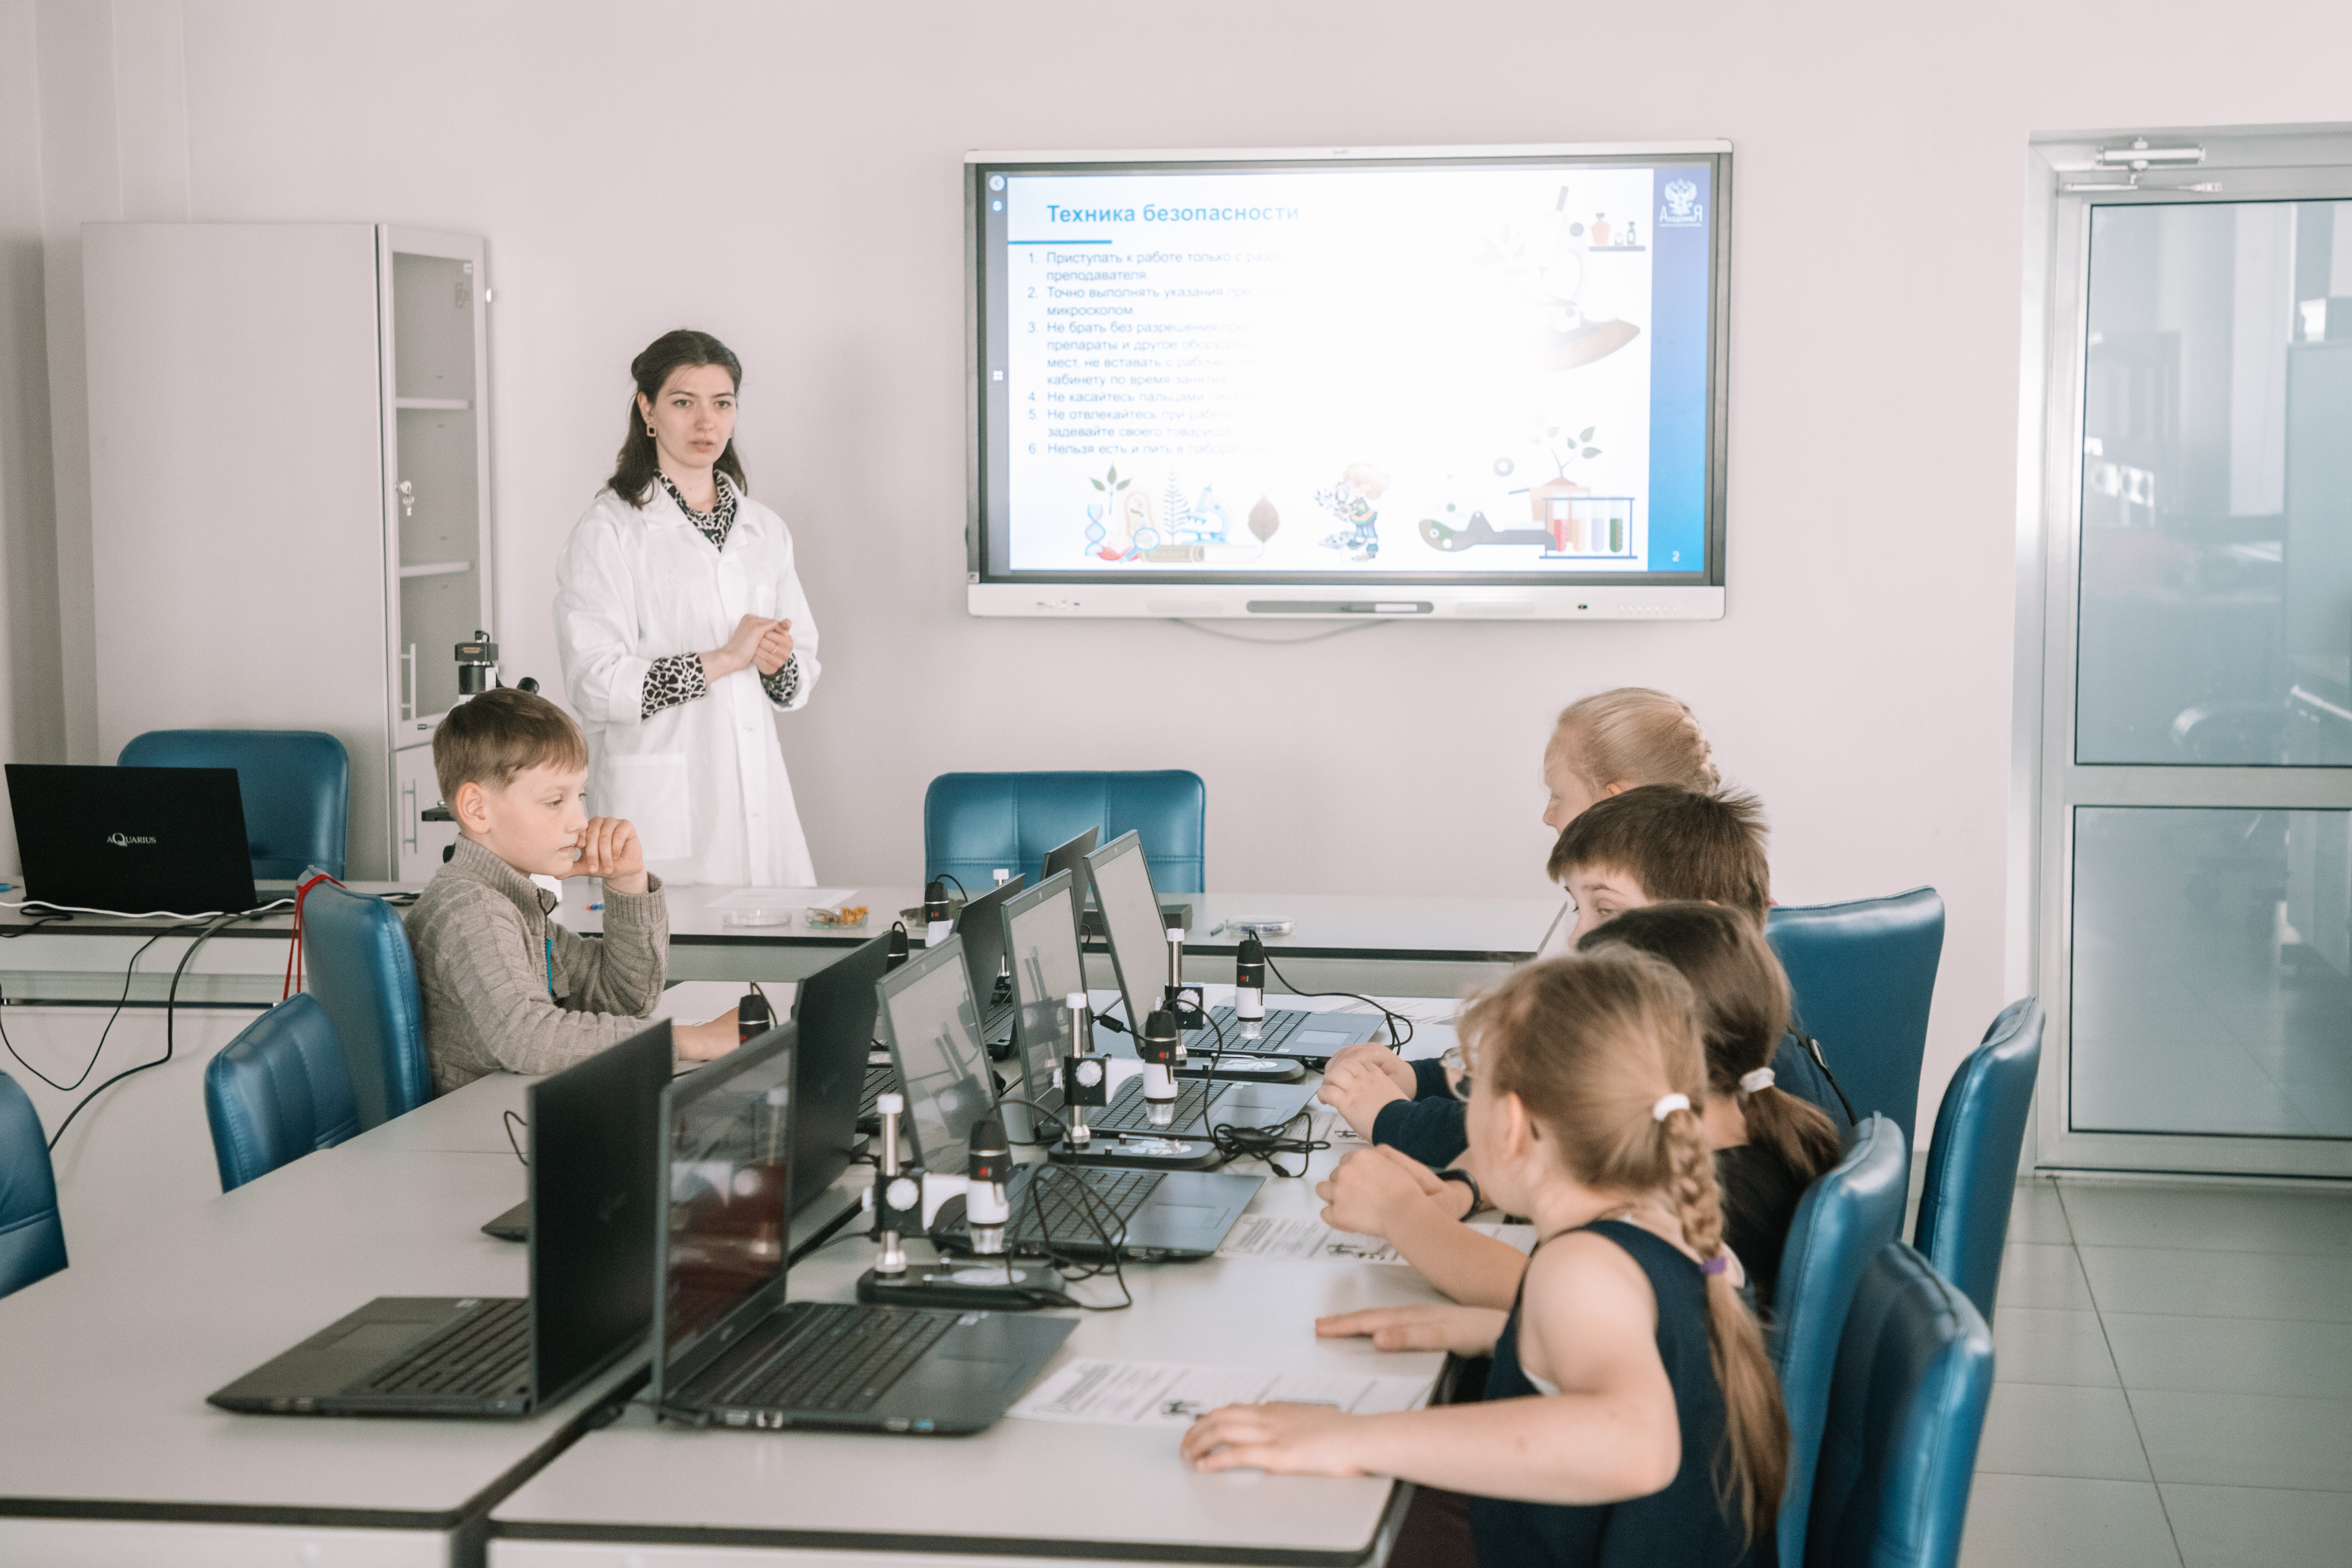 Летняя школа на базе Технопарка для младших школьников начала работу в Мининском